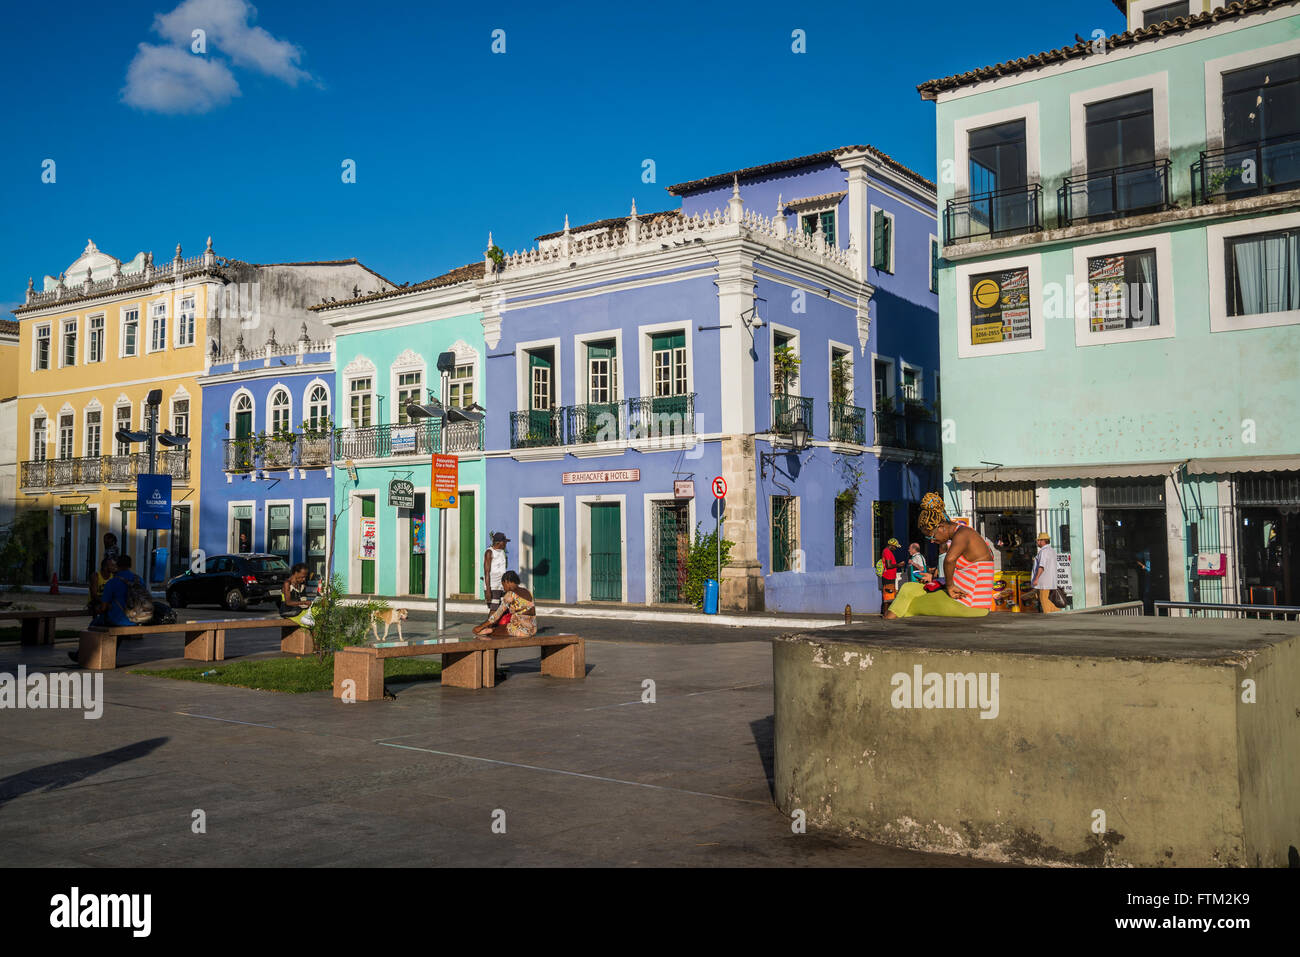 Portoghese architettura coloniale, Praca de Se, Salvador, Bahia, Brasile Foto Stock